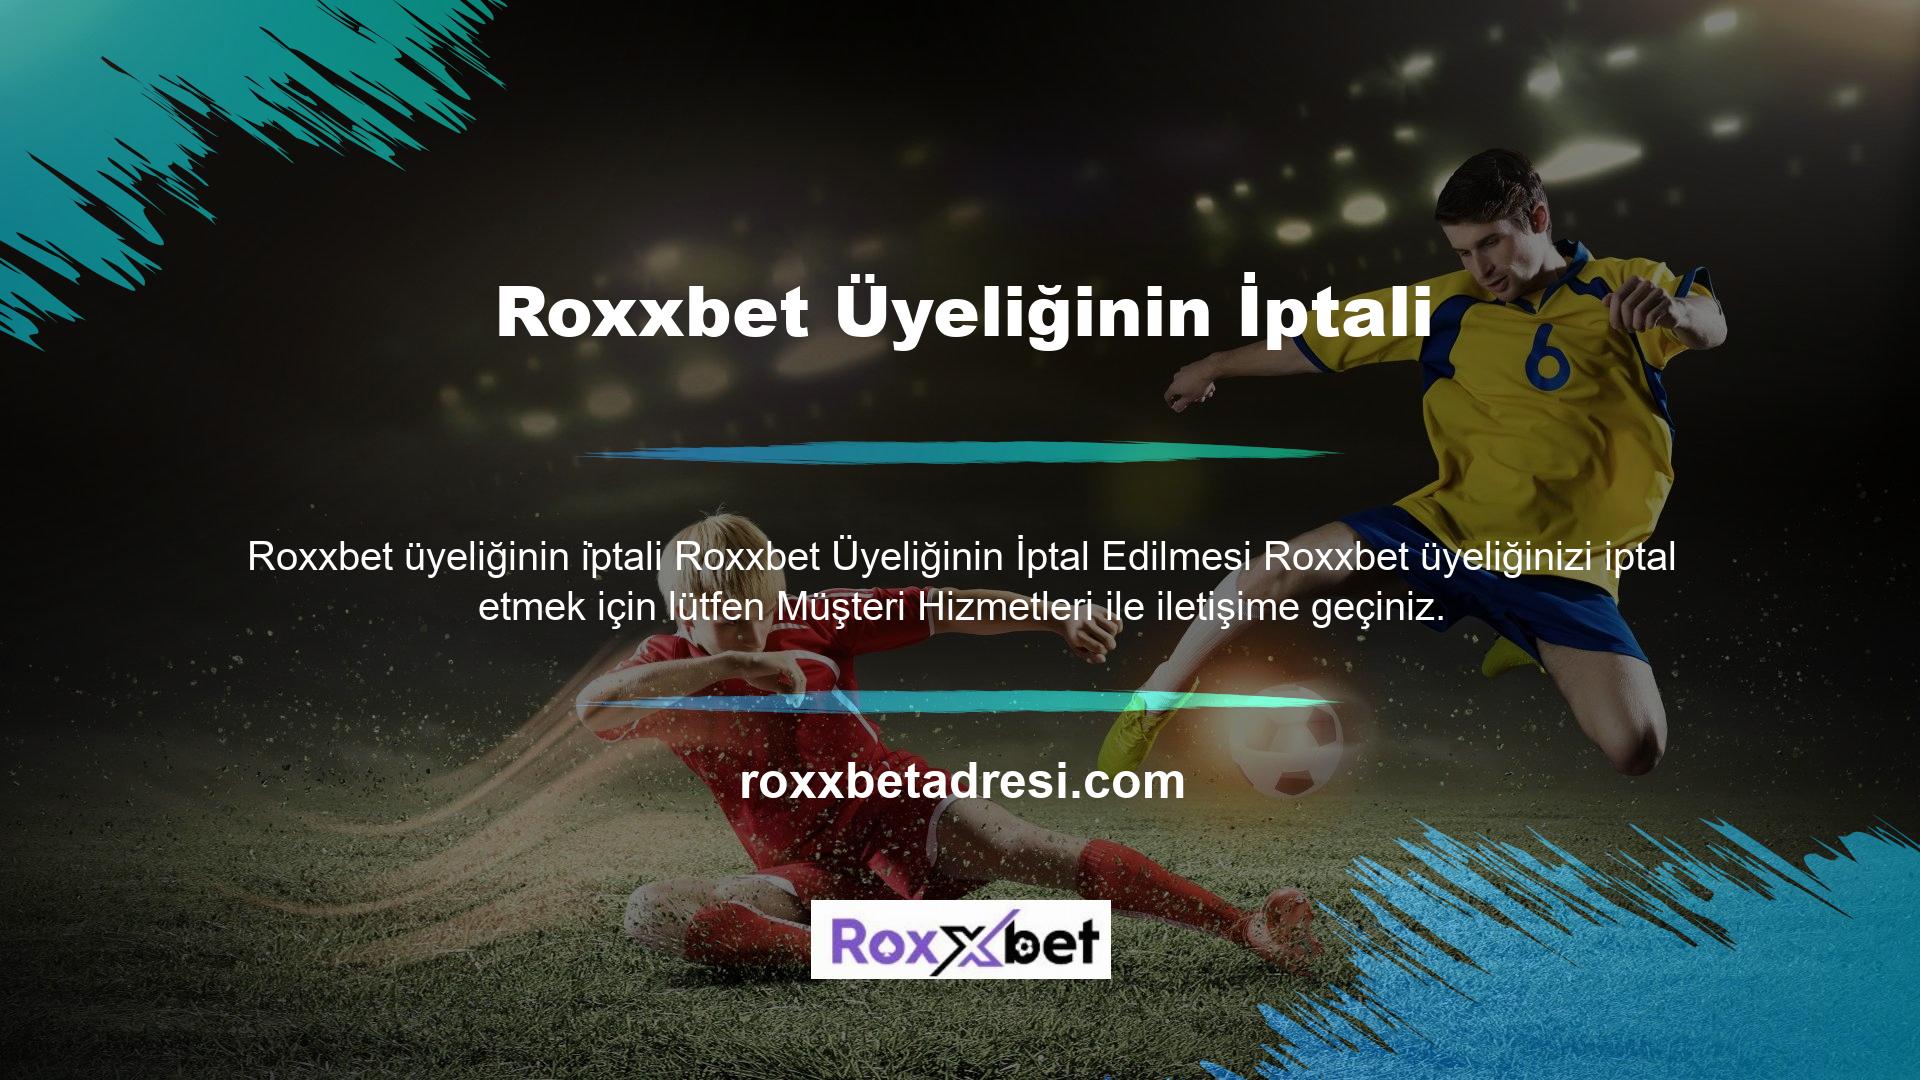 Roxxbet destek ekibiyle iletişime geçmek için Roxxbet web sitesini ziyaret edin ve web sayfasının sol üst köşesindeki "Canlı Destek" butonuna tıklayın